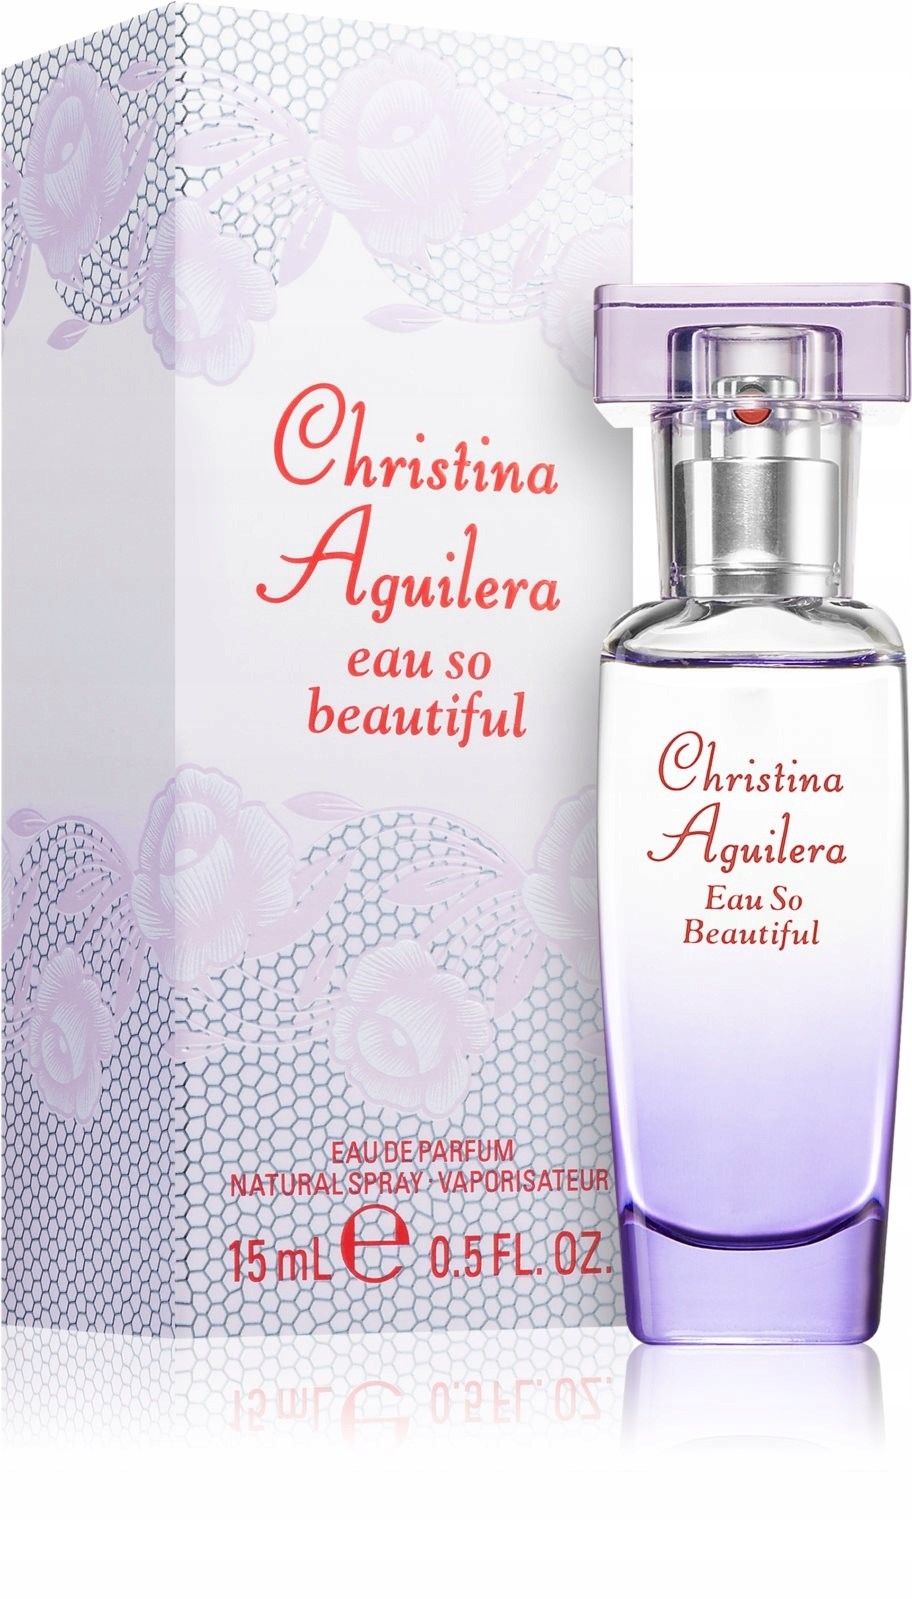 Christina Aguilera Eau So Beautiful Edp 15ML